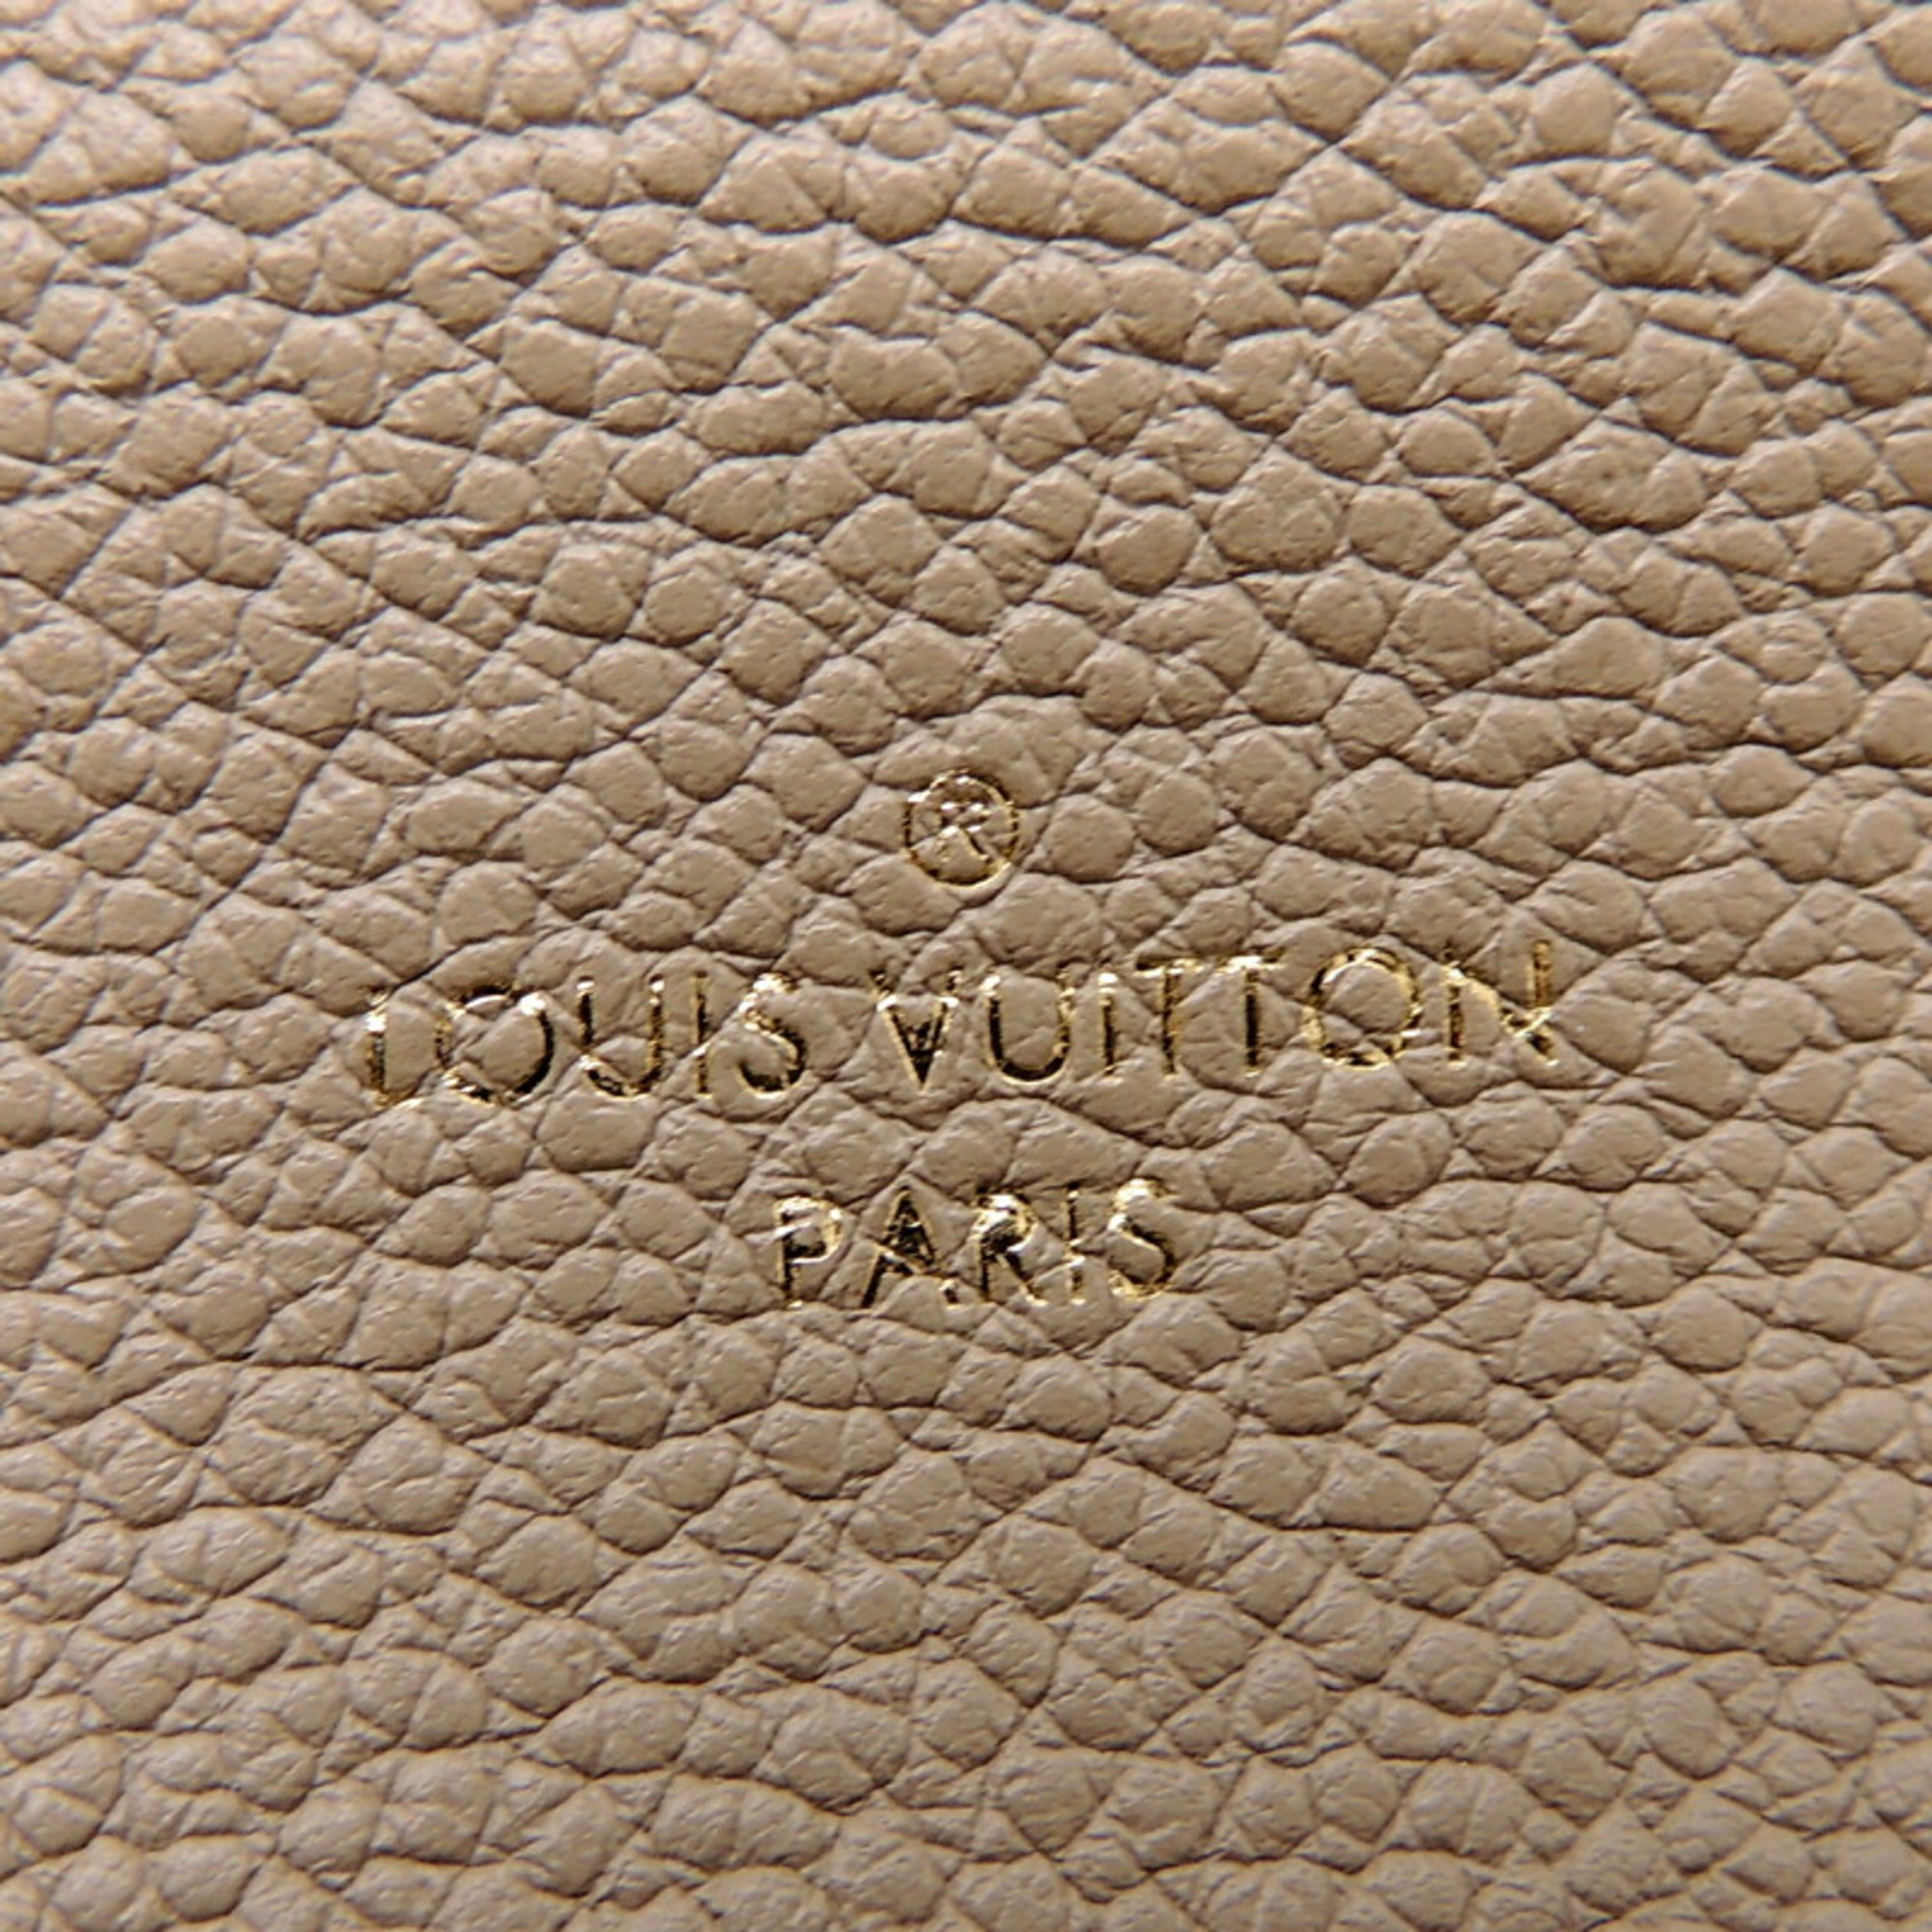 Louis Vuitton Pochette Rivet MM Women's Men's Glasses Case Leather Galle